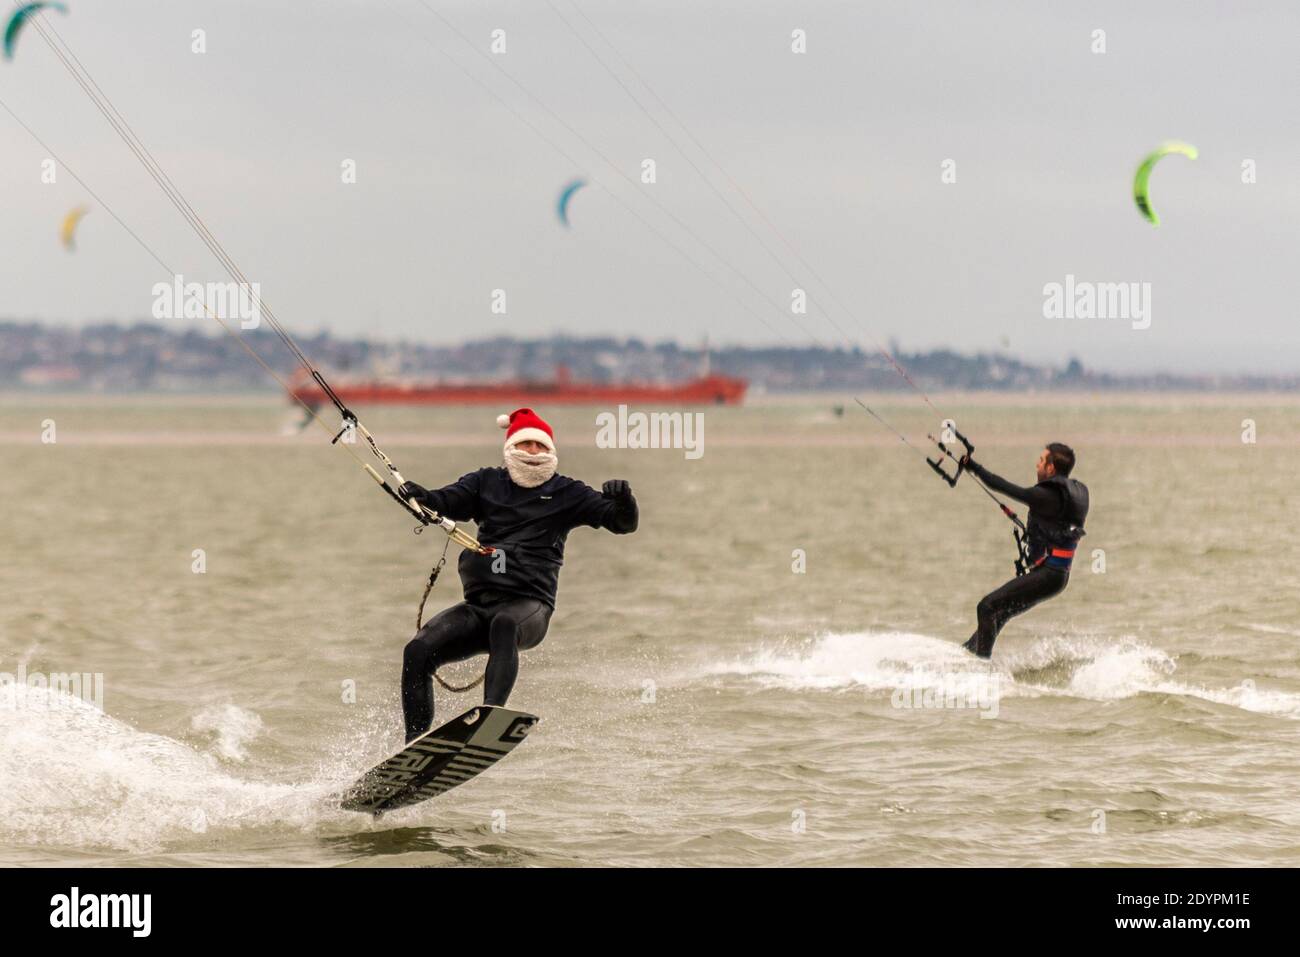 Kitesurfen am Boxing Day in Southend on Sea, Essex, Großbritannien. Männlicher Kite-Surfer trägt festlichen Weihnachtsmann Hut und weißen Bart, Springen aus dem Wasser Stockfoto